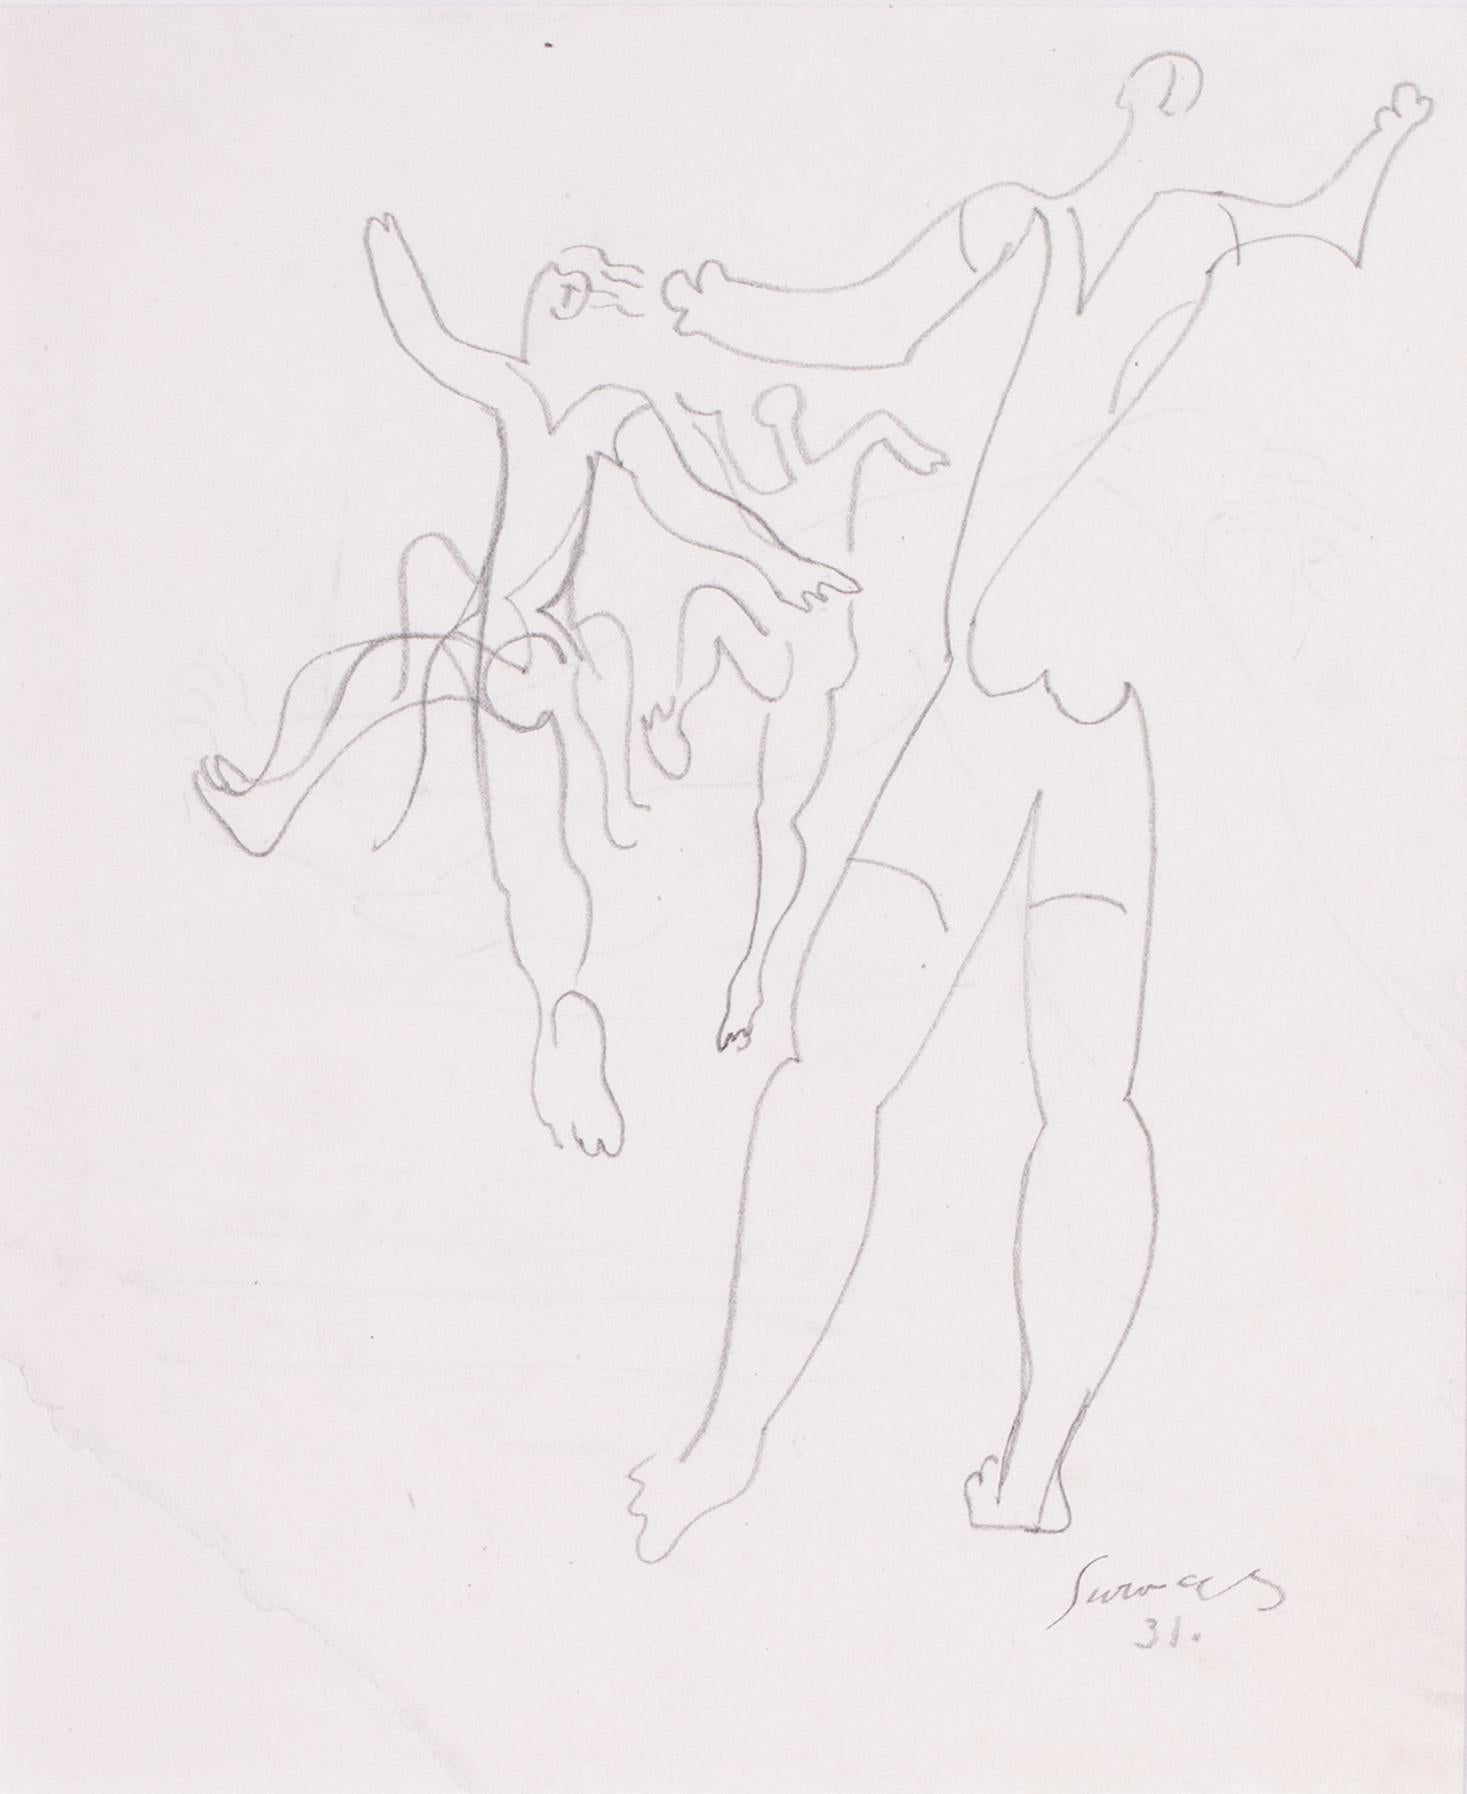 Le dessin français de 1931 de l'artiste cubiste Leopold Survage, représentant des danseurs - Art de Leopold Survage 